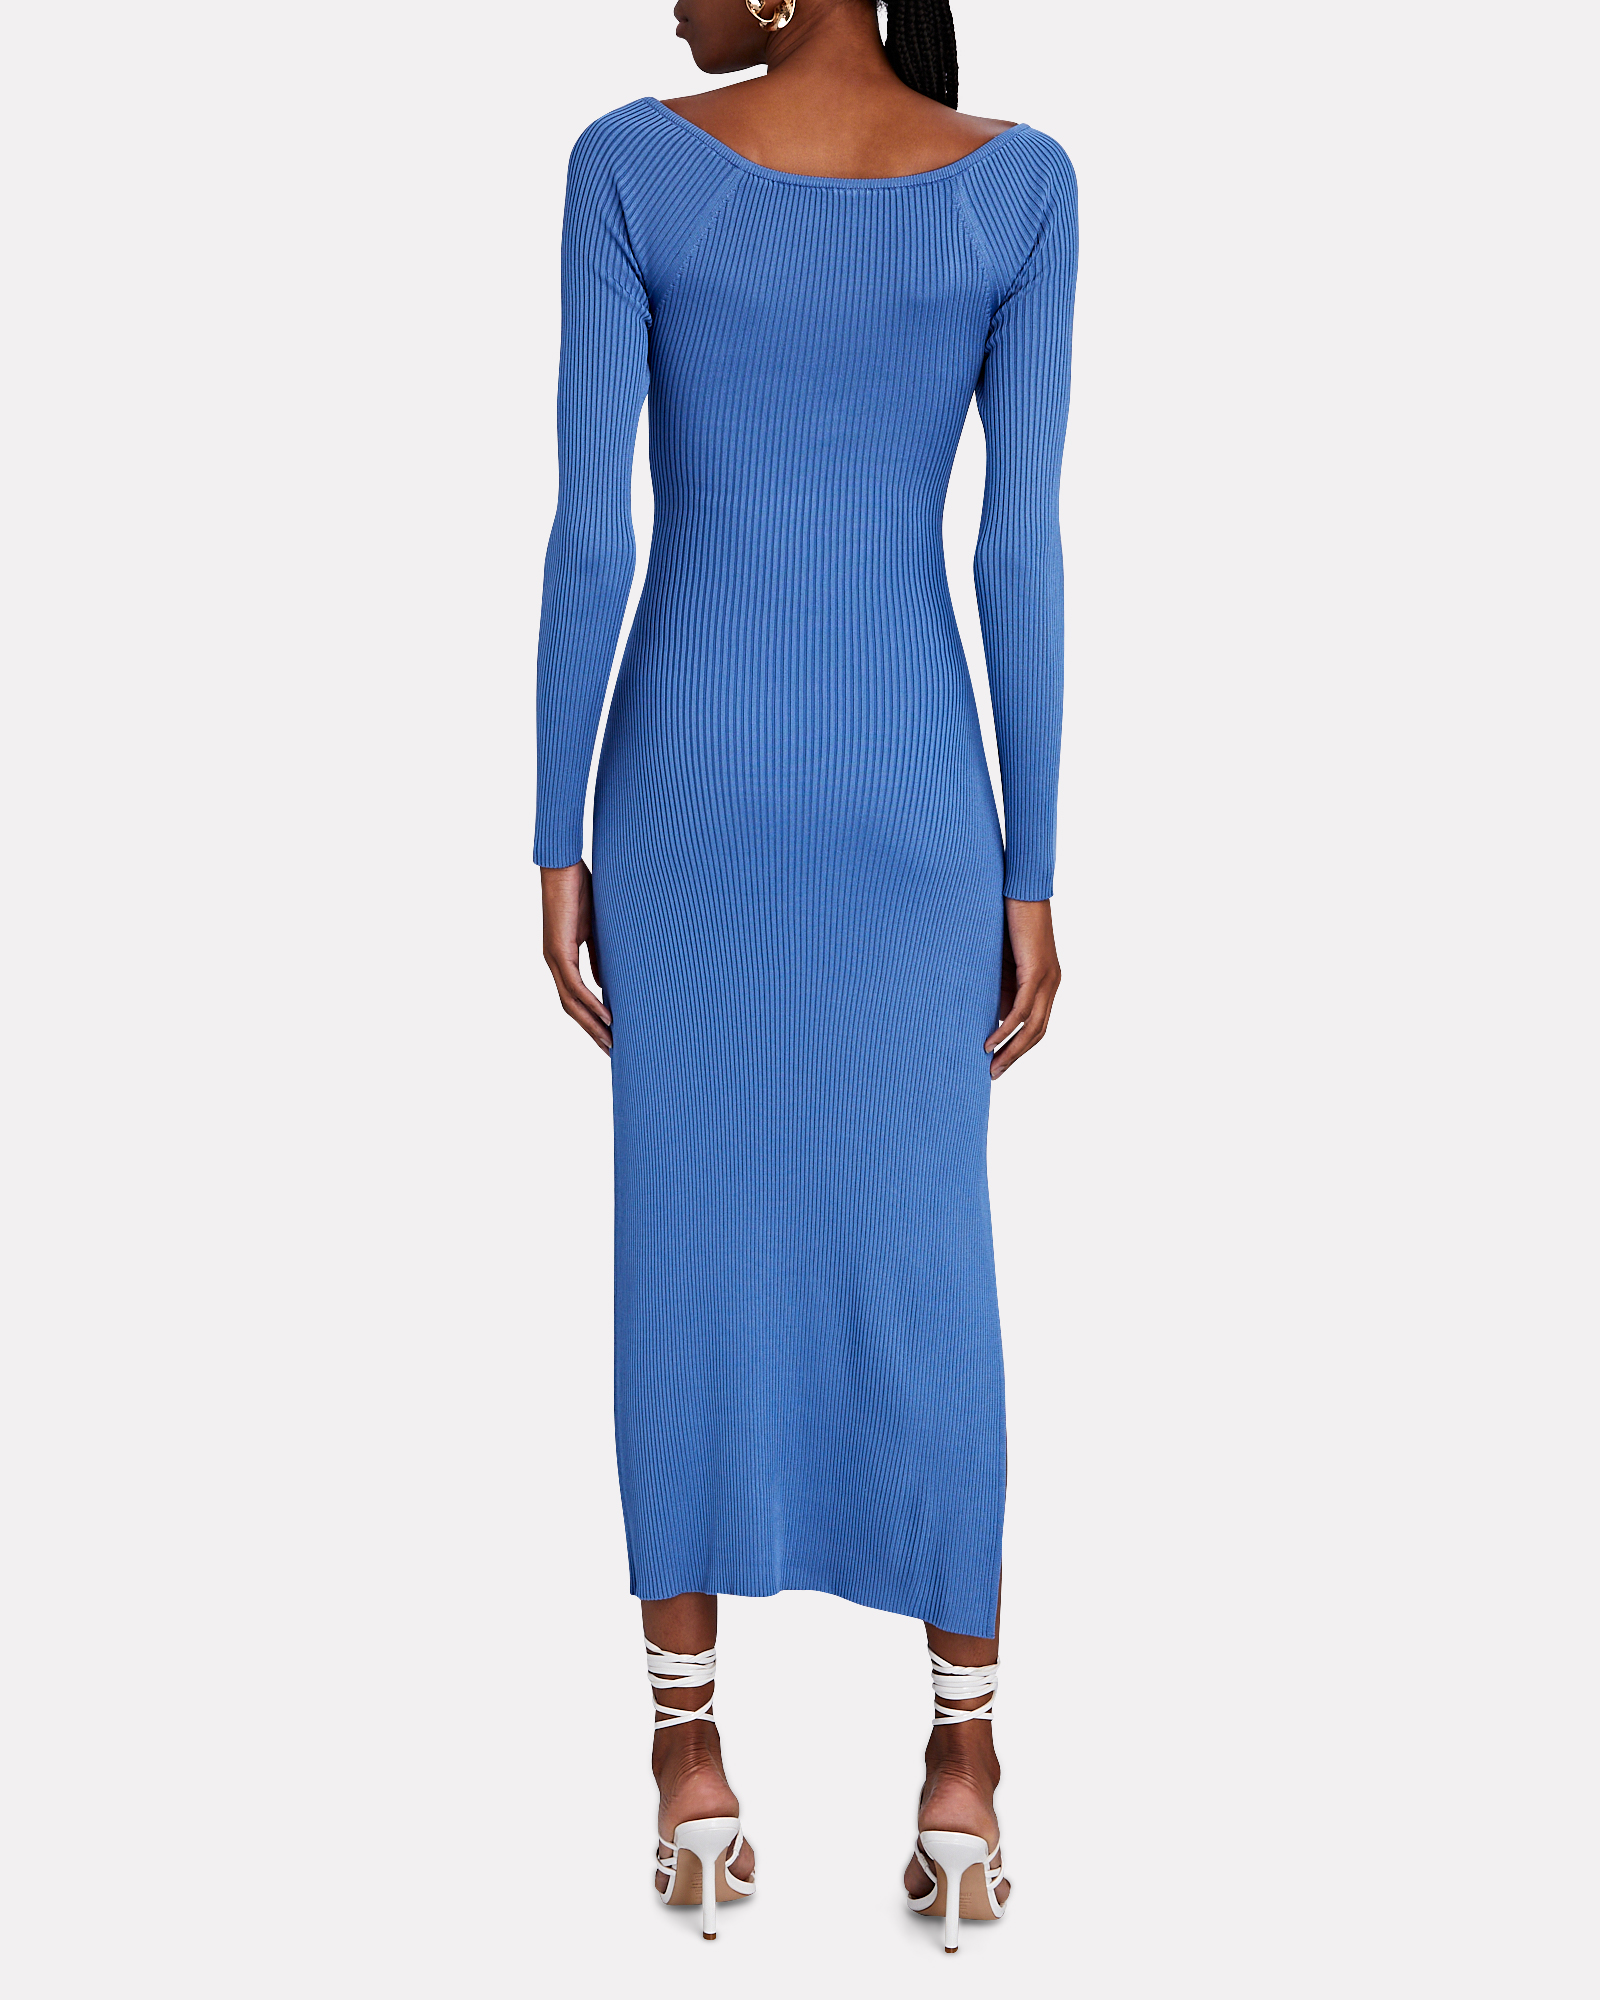 Cult Gaia Melissa Rib Knit Midi Dress In Blue | INTERMIX®